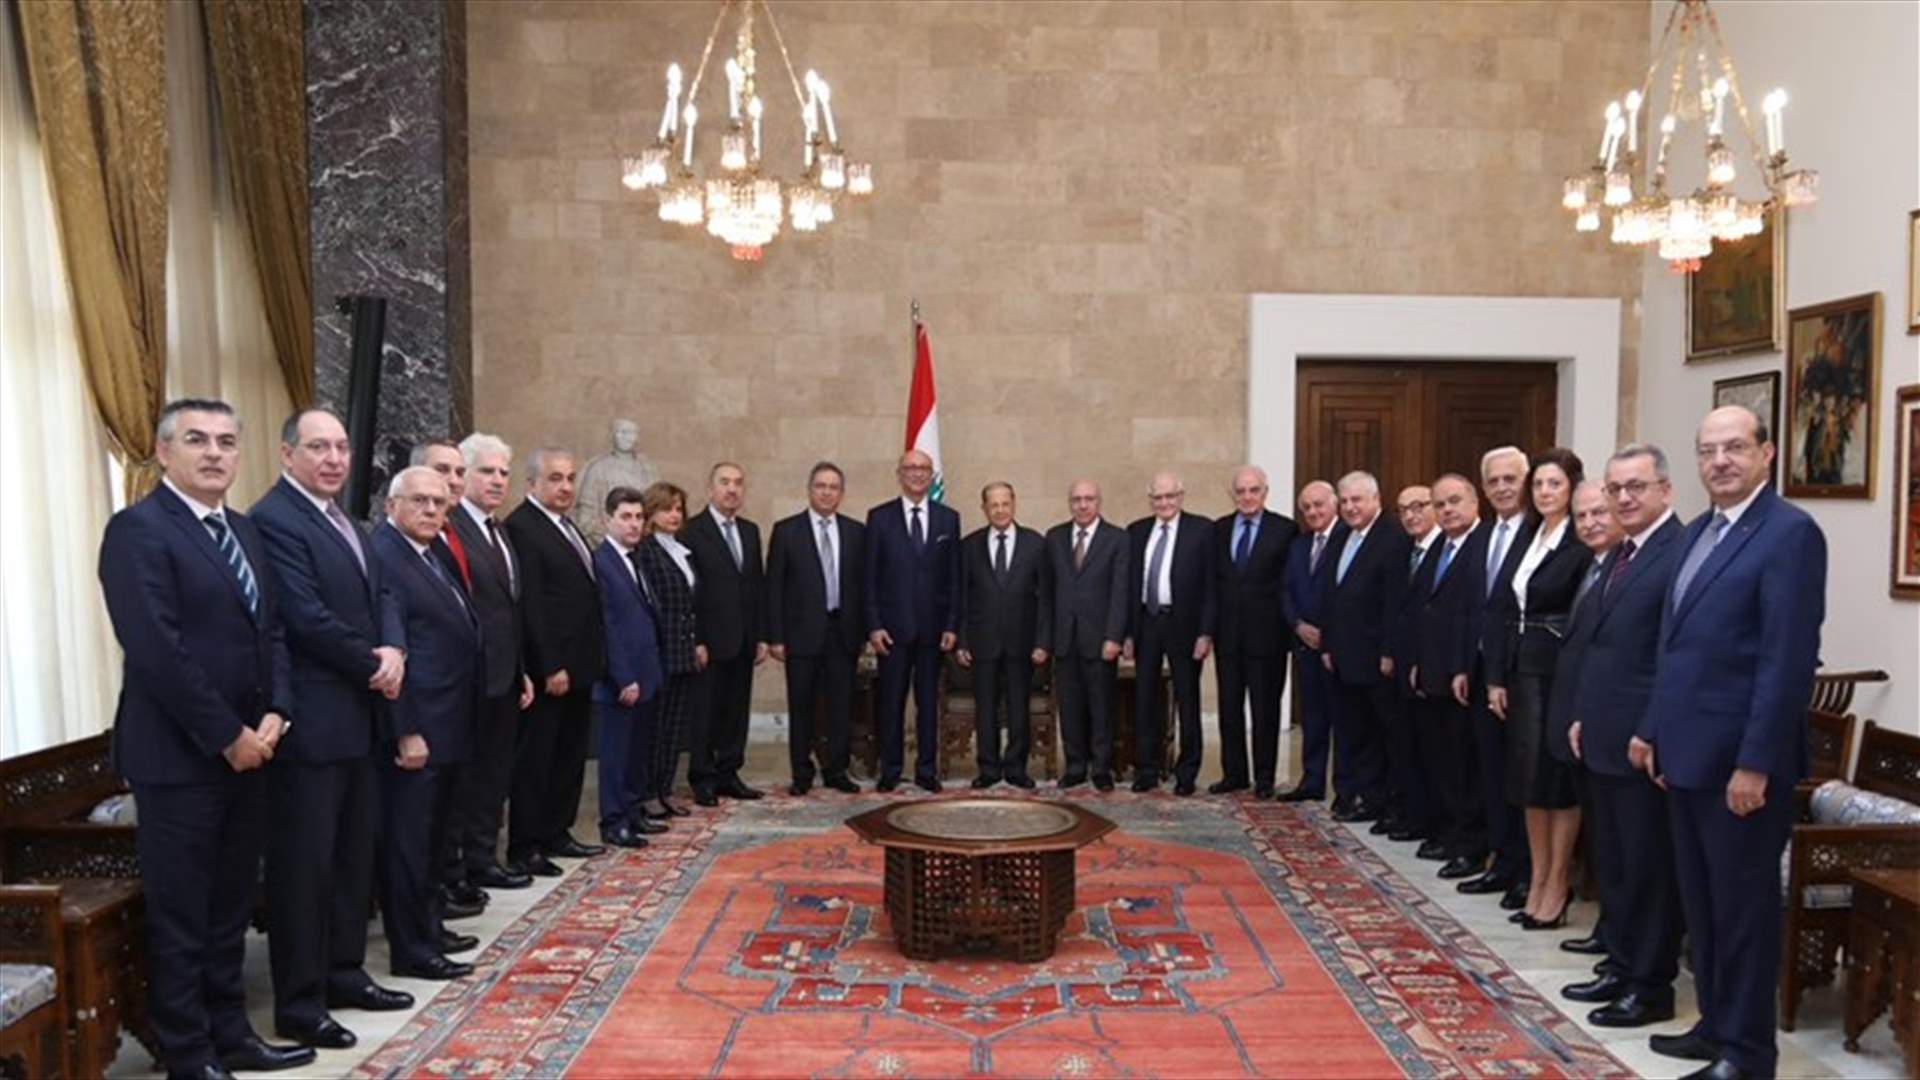 الرئيس عون: رأس لبنان ظل مرفوعاً لأننا لم نخضع للضغط